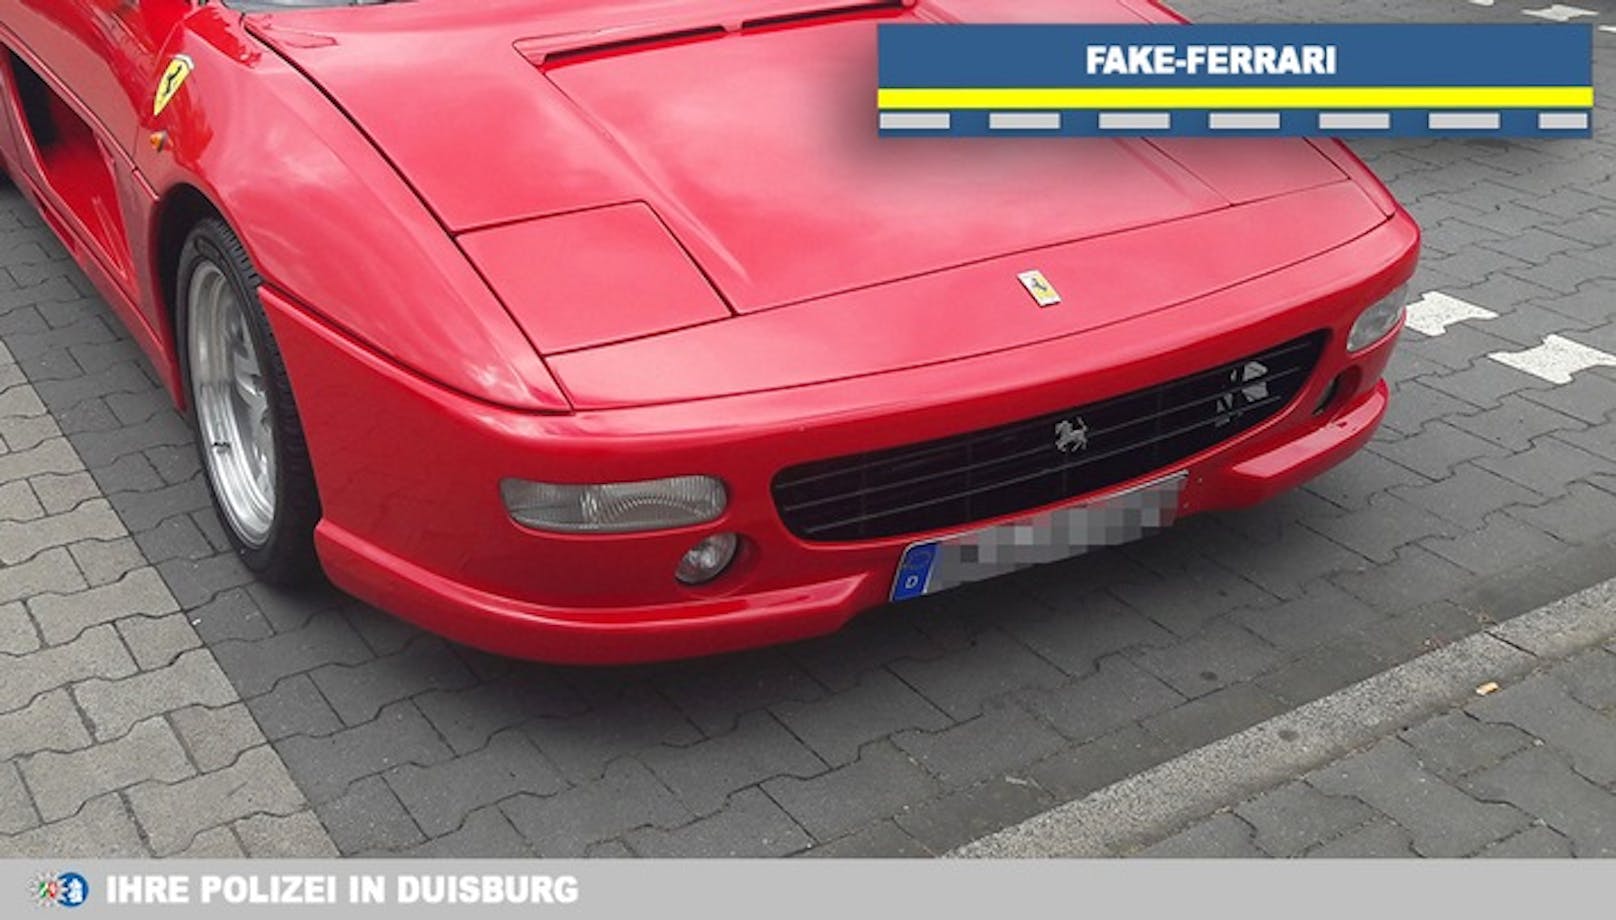 Der Mann erhielt für seinen "Fake-Ferrari" eine Anzeige.